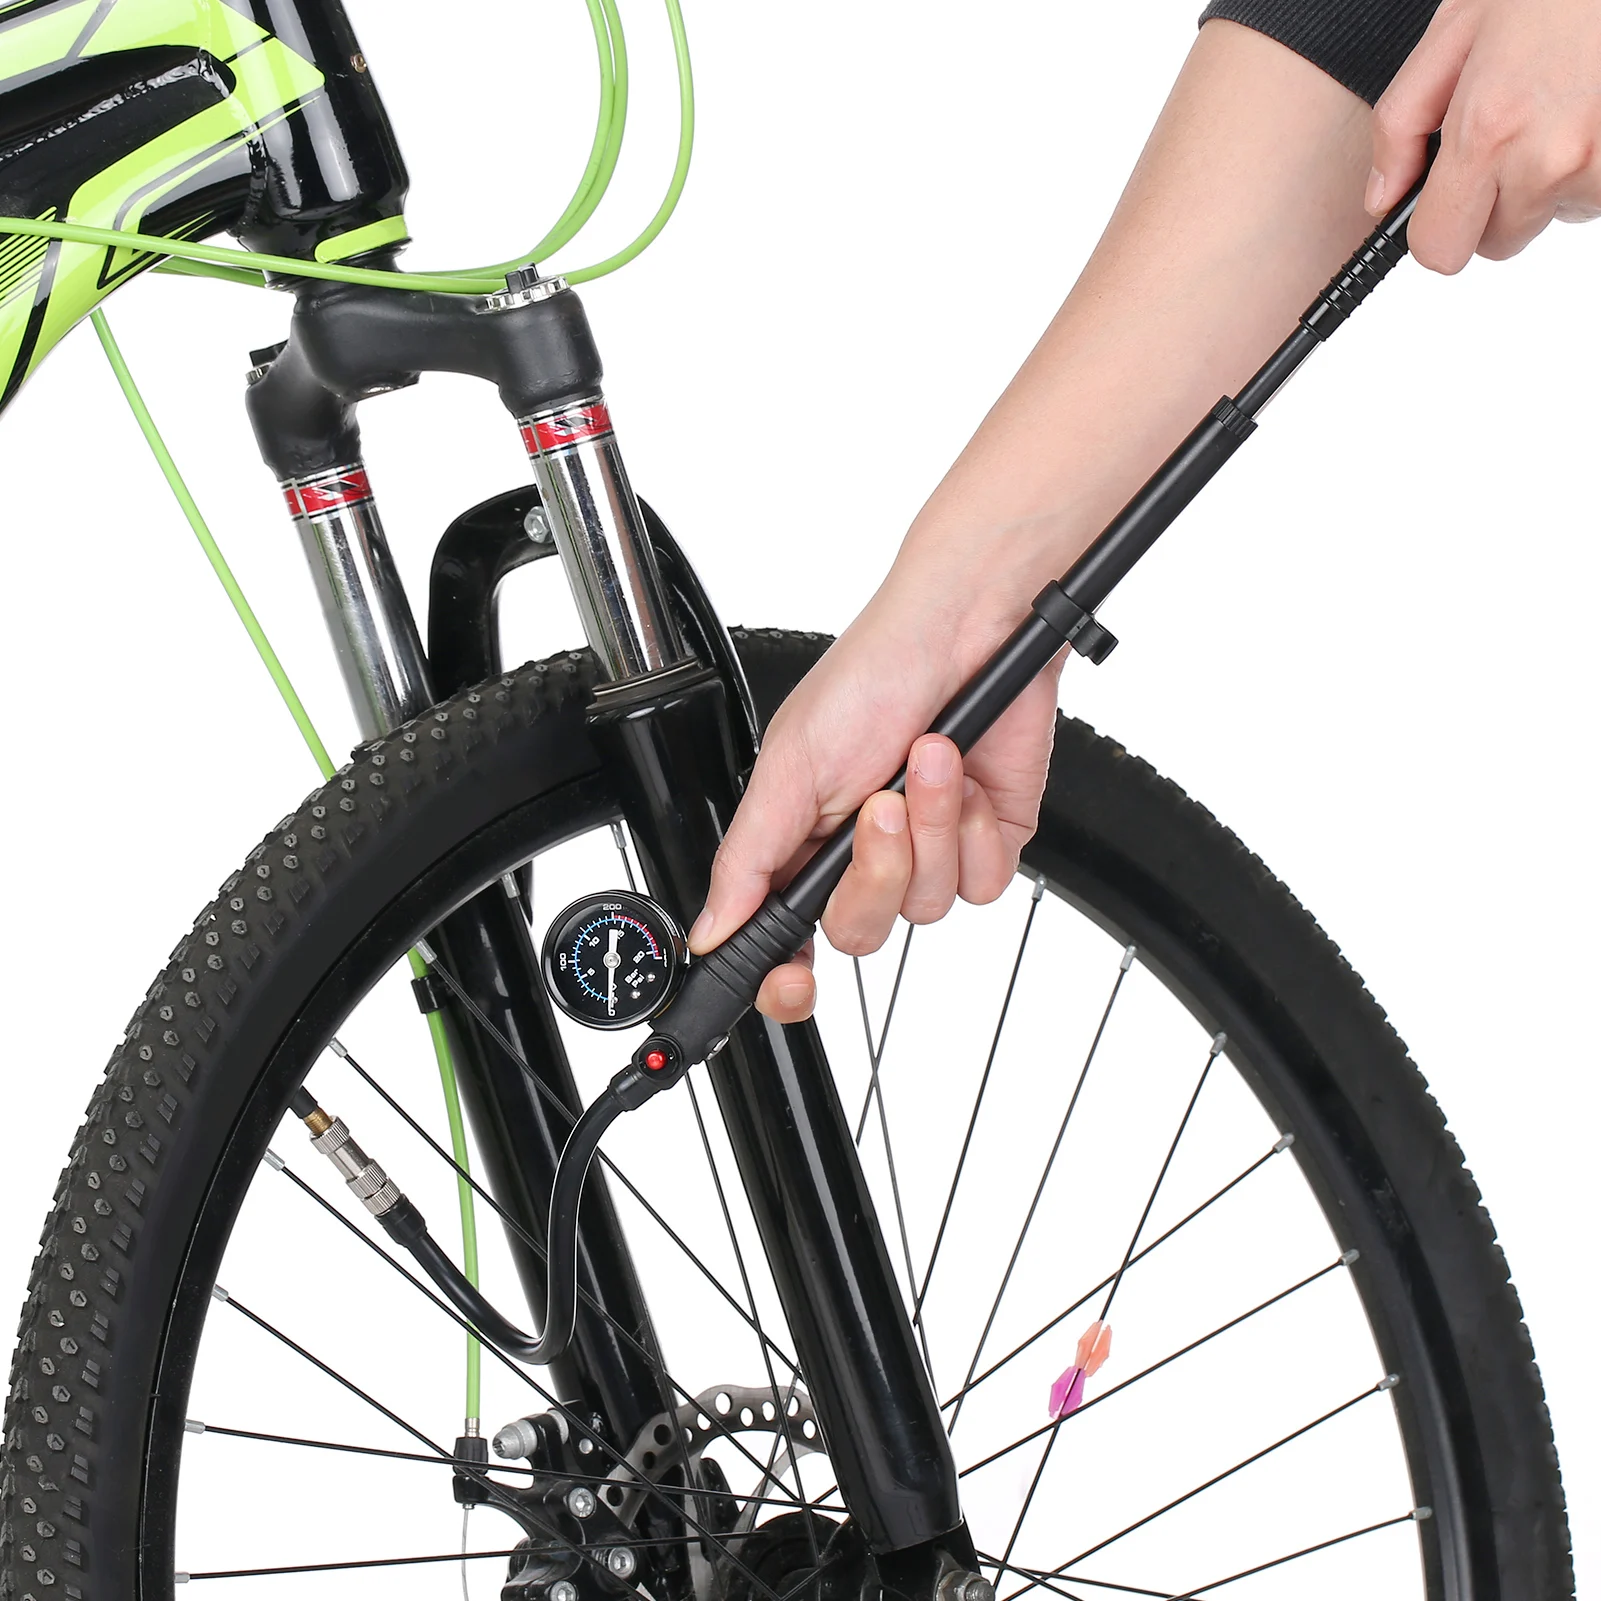 

Амортизационный насос высокого давления 300 PSI, воздушный насос с клапаном Presta Schrader, дорожный велосипедный насос с манометром для передней вилки и задней части велосипеда